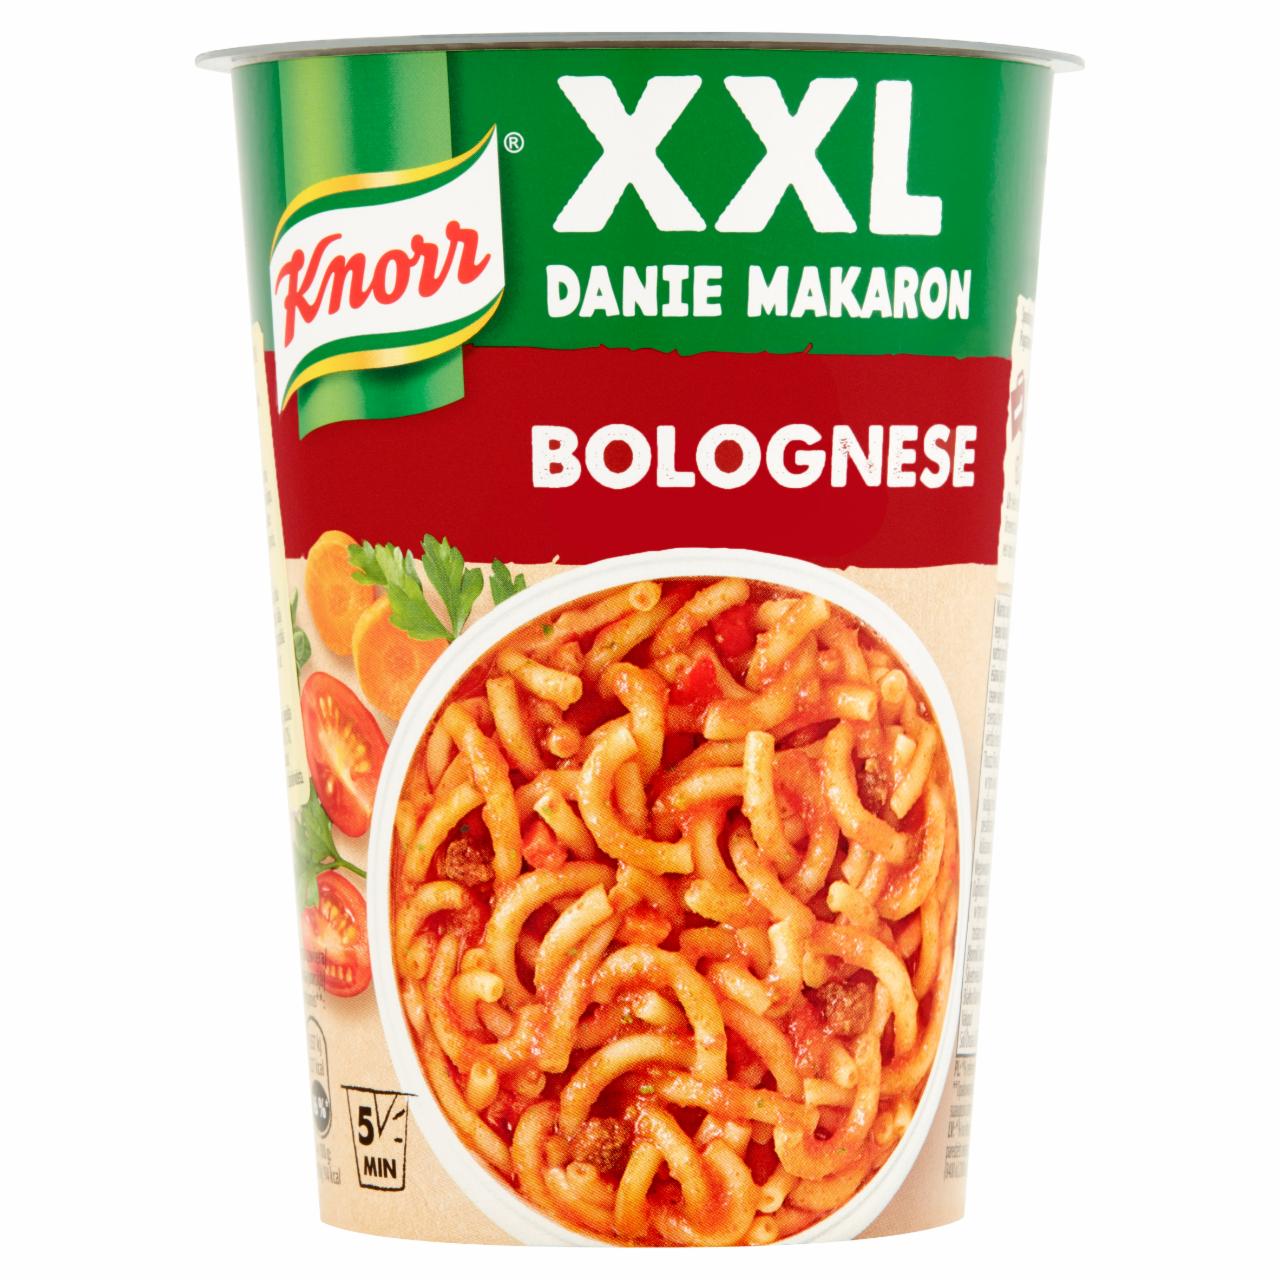 Zdjęcia - Knorr XXL Danie makaron Bolognese 88 g